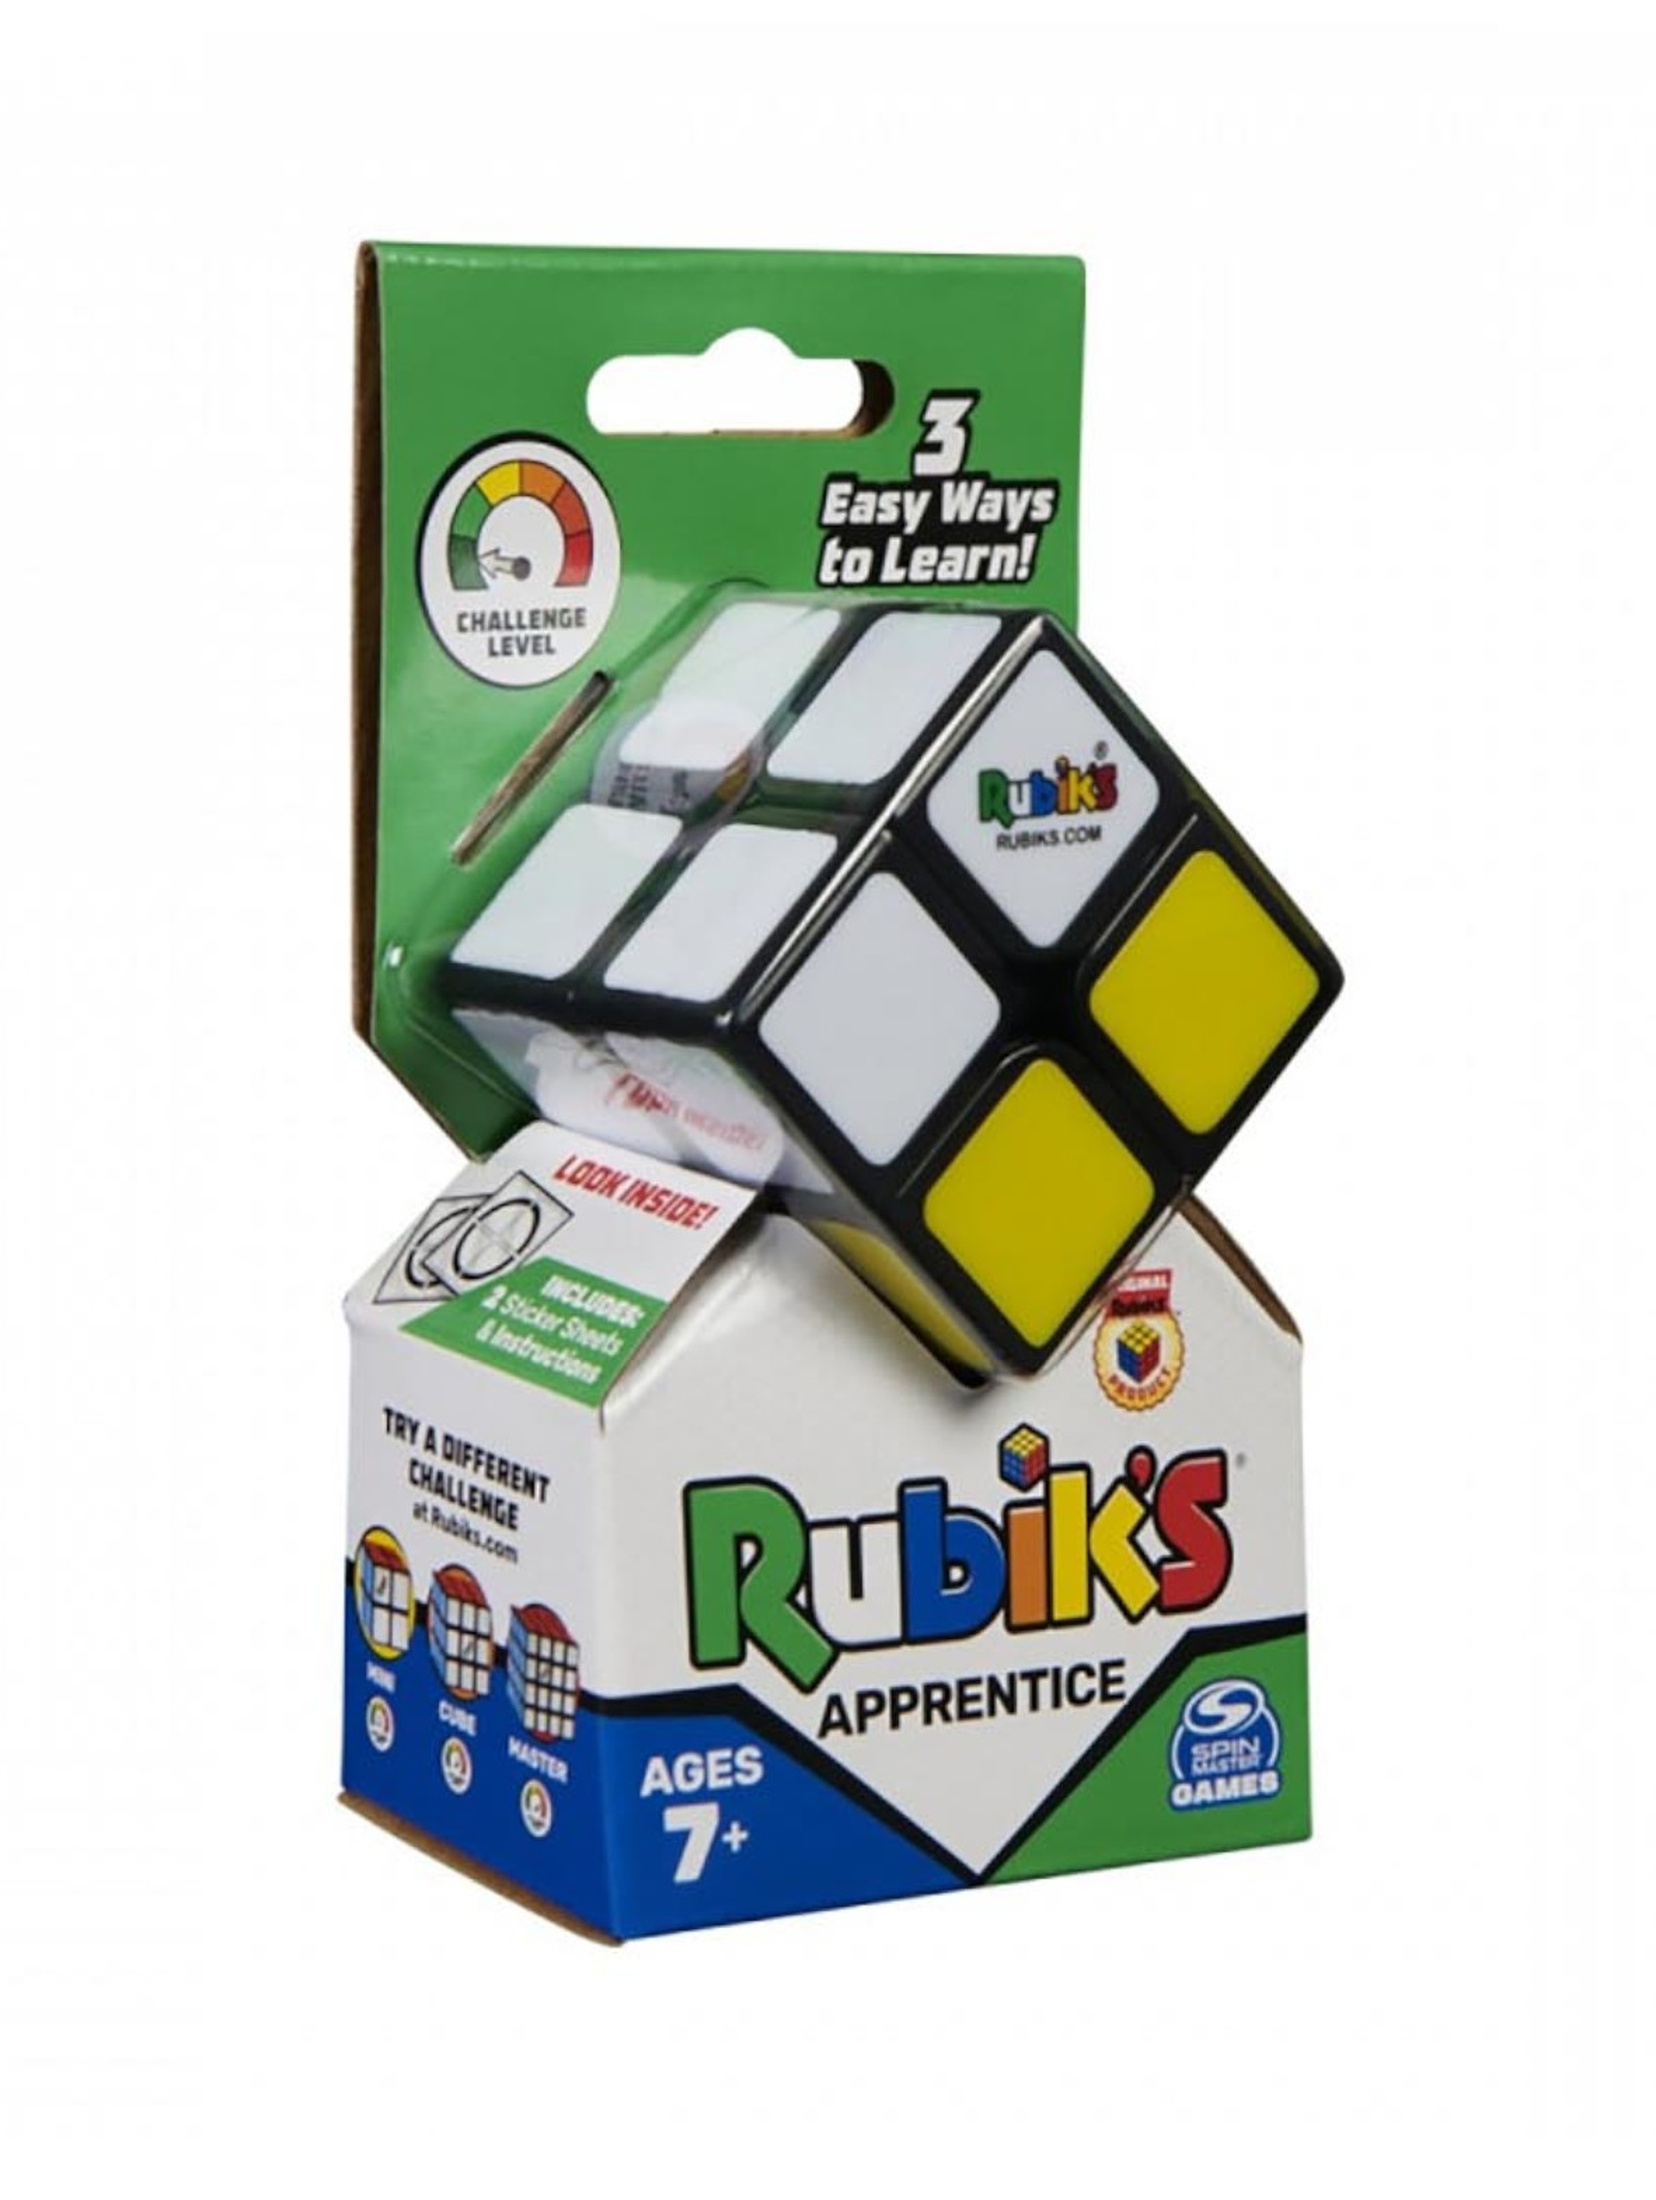 Kostka Rubiks: Kostka Dwukolorowa